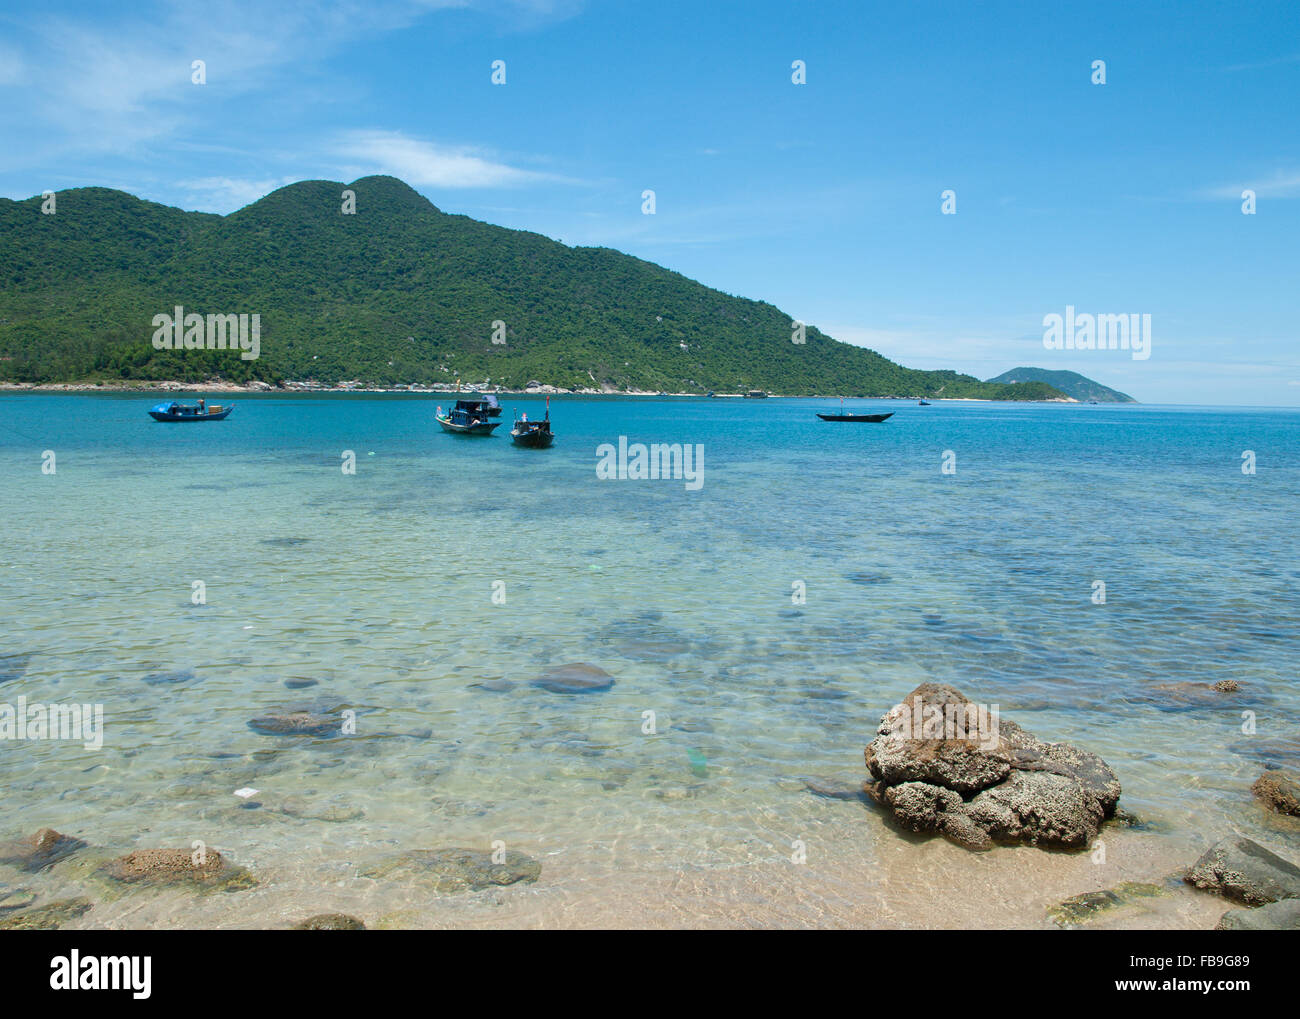 Ensoleillé et chaud tropical beach. Baie de Cham îles près de Hoi An Hoi An() et Da Nang() Danang, Vietnam central. Banque D'Images